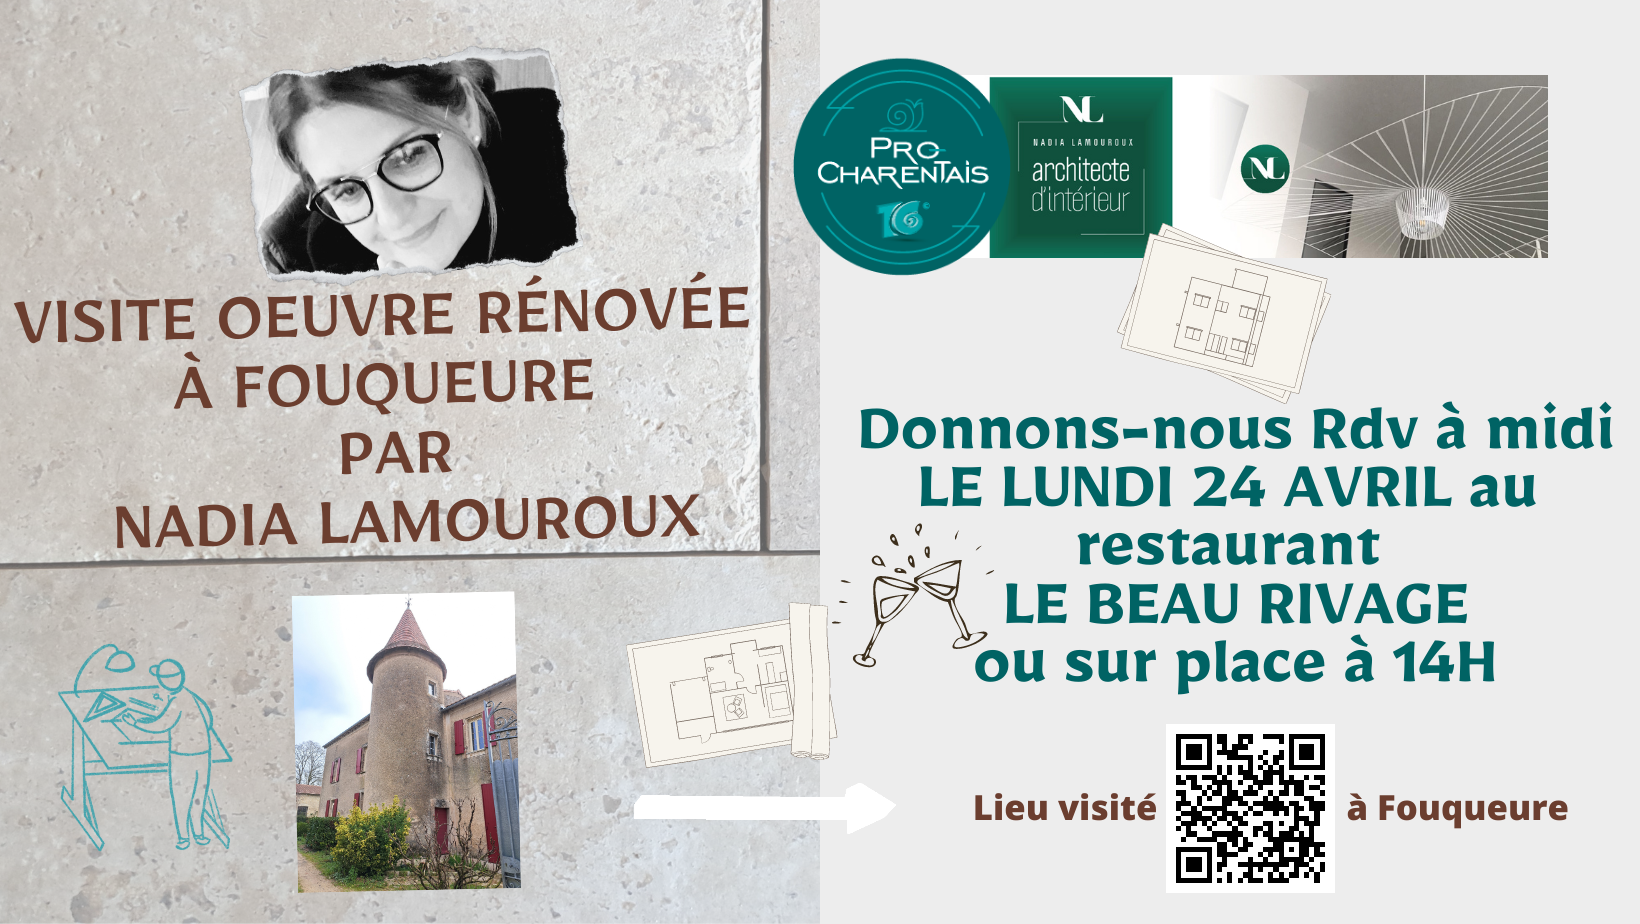 Visite Chantier terminé de Nadia Lamouroux le lundi 24 Avril avec Pro Charentais